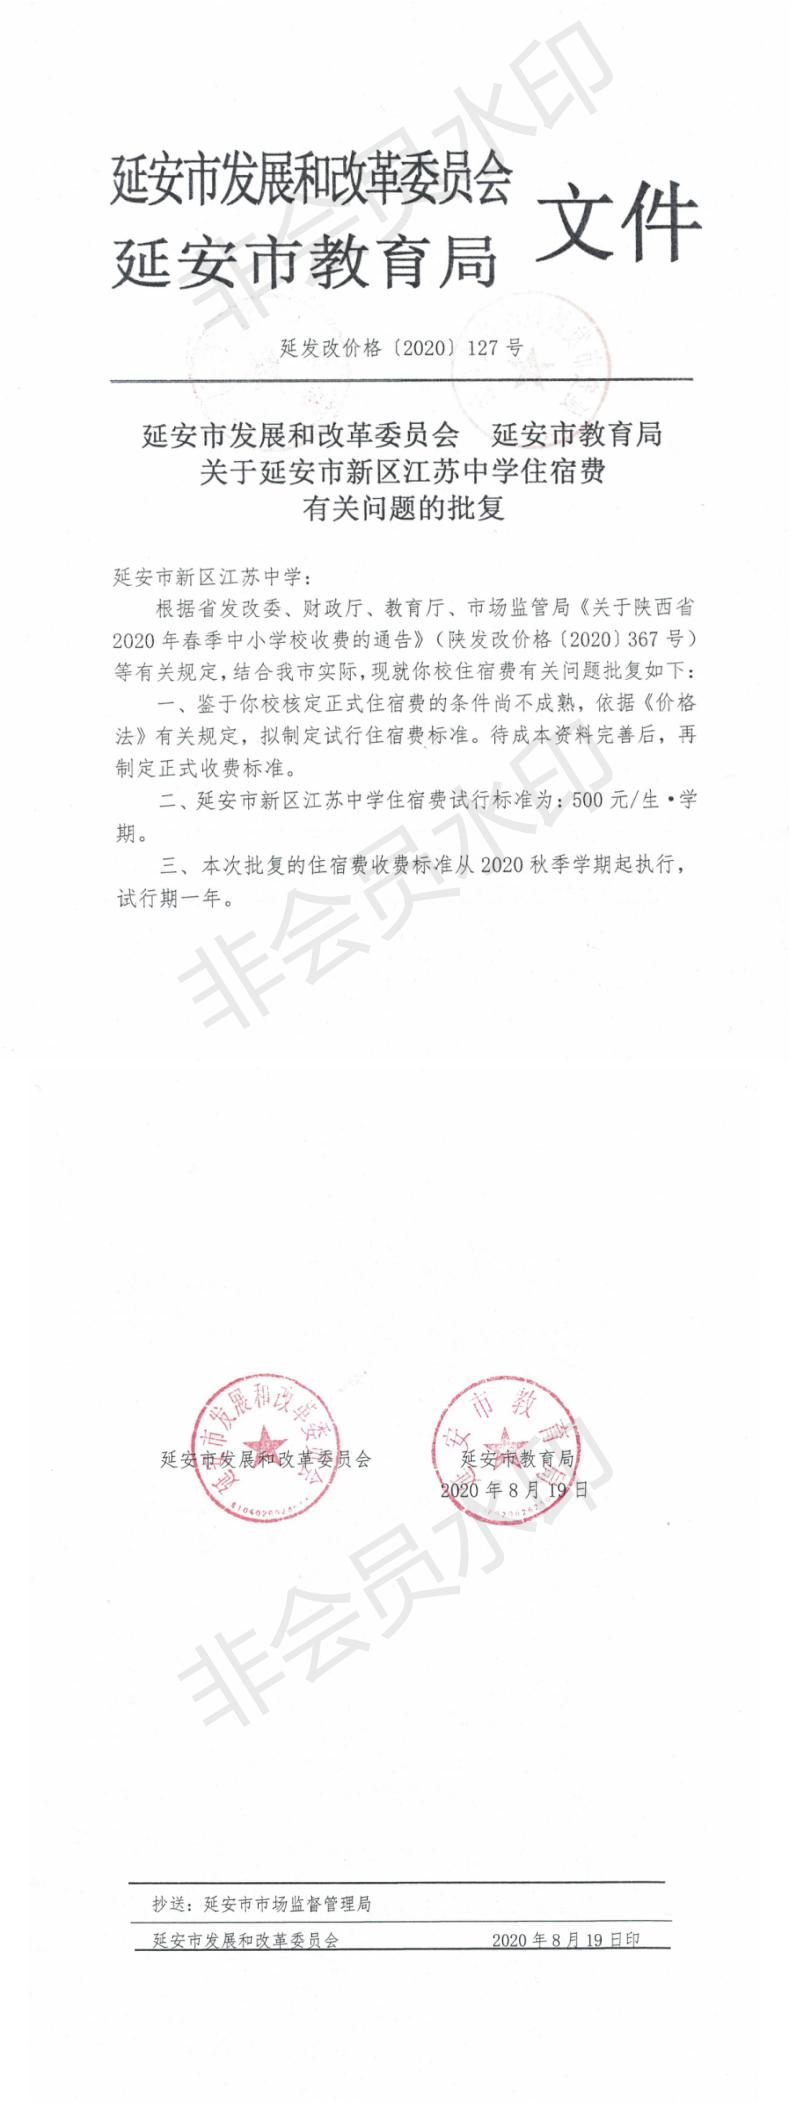 學校(xiào)通知公告欄，2020.8.20總務(wù)處發布.jpg